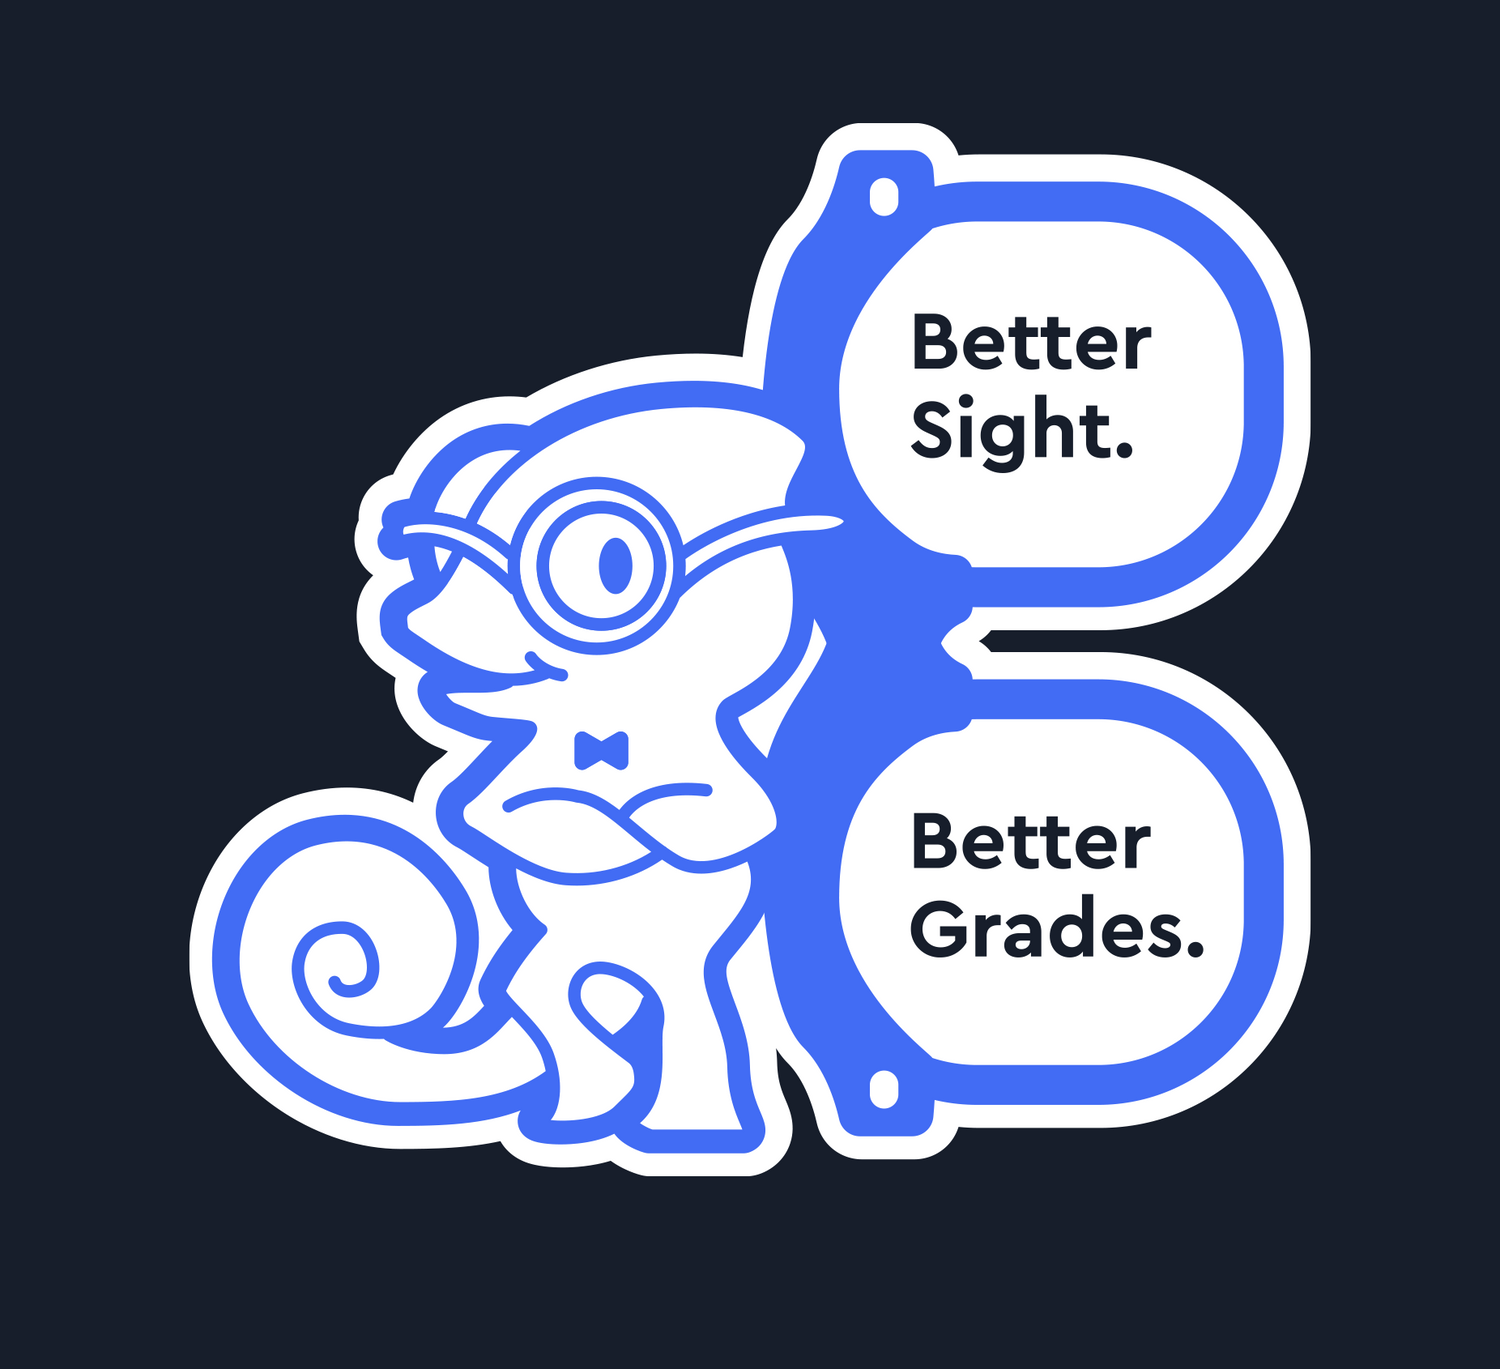 Bannière Better Sight pour de meilleures notes - pour répondre aux besoins des enfants en matière de soins oculaires